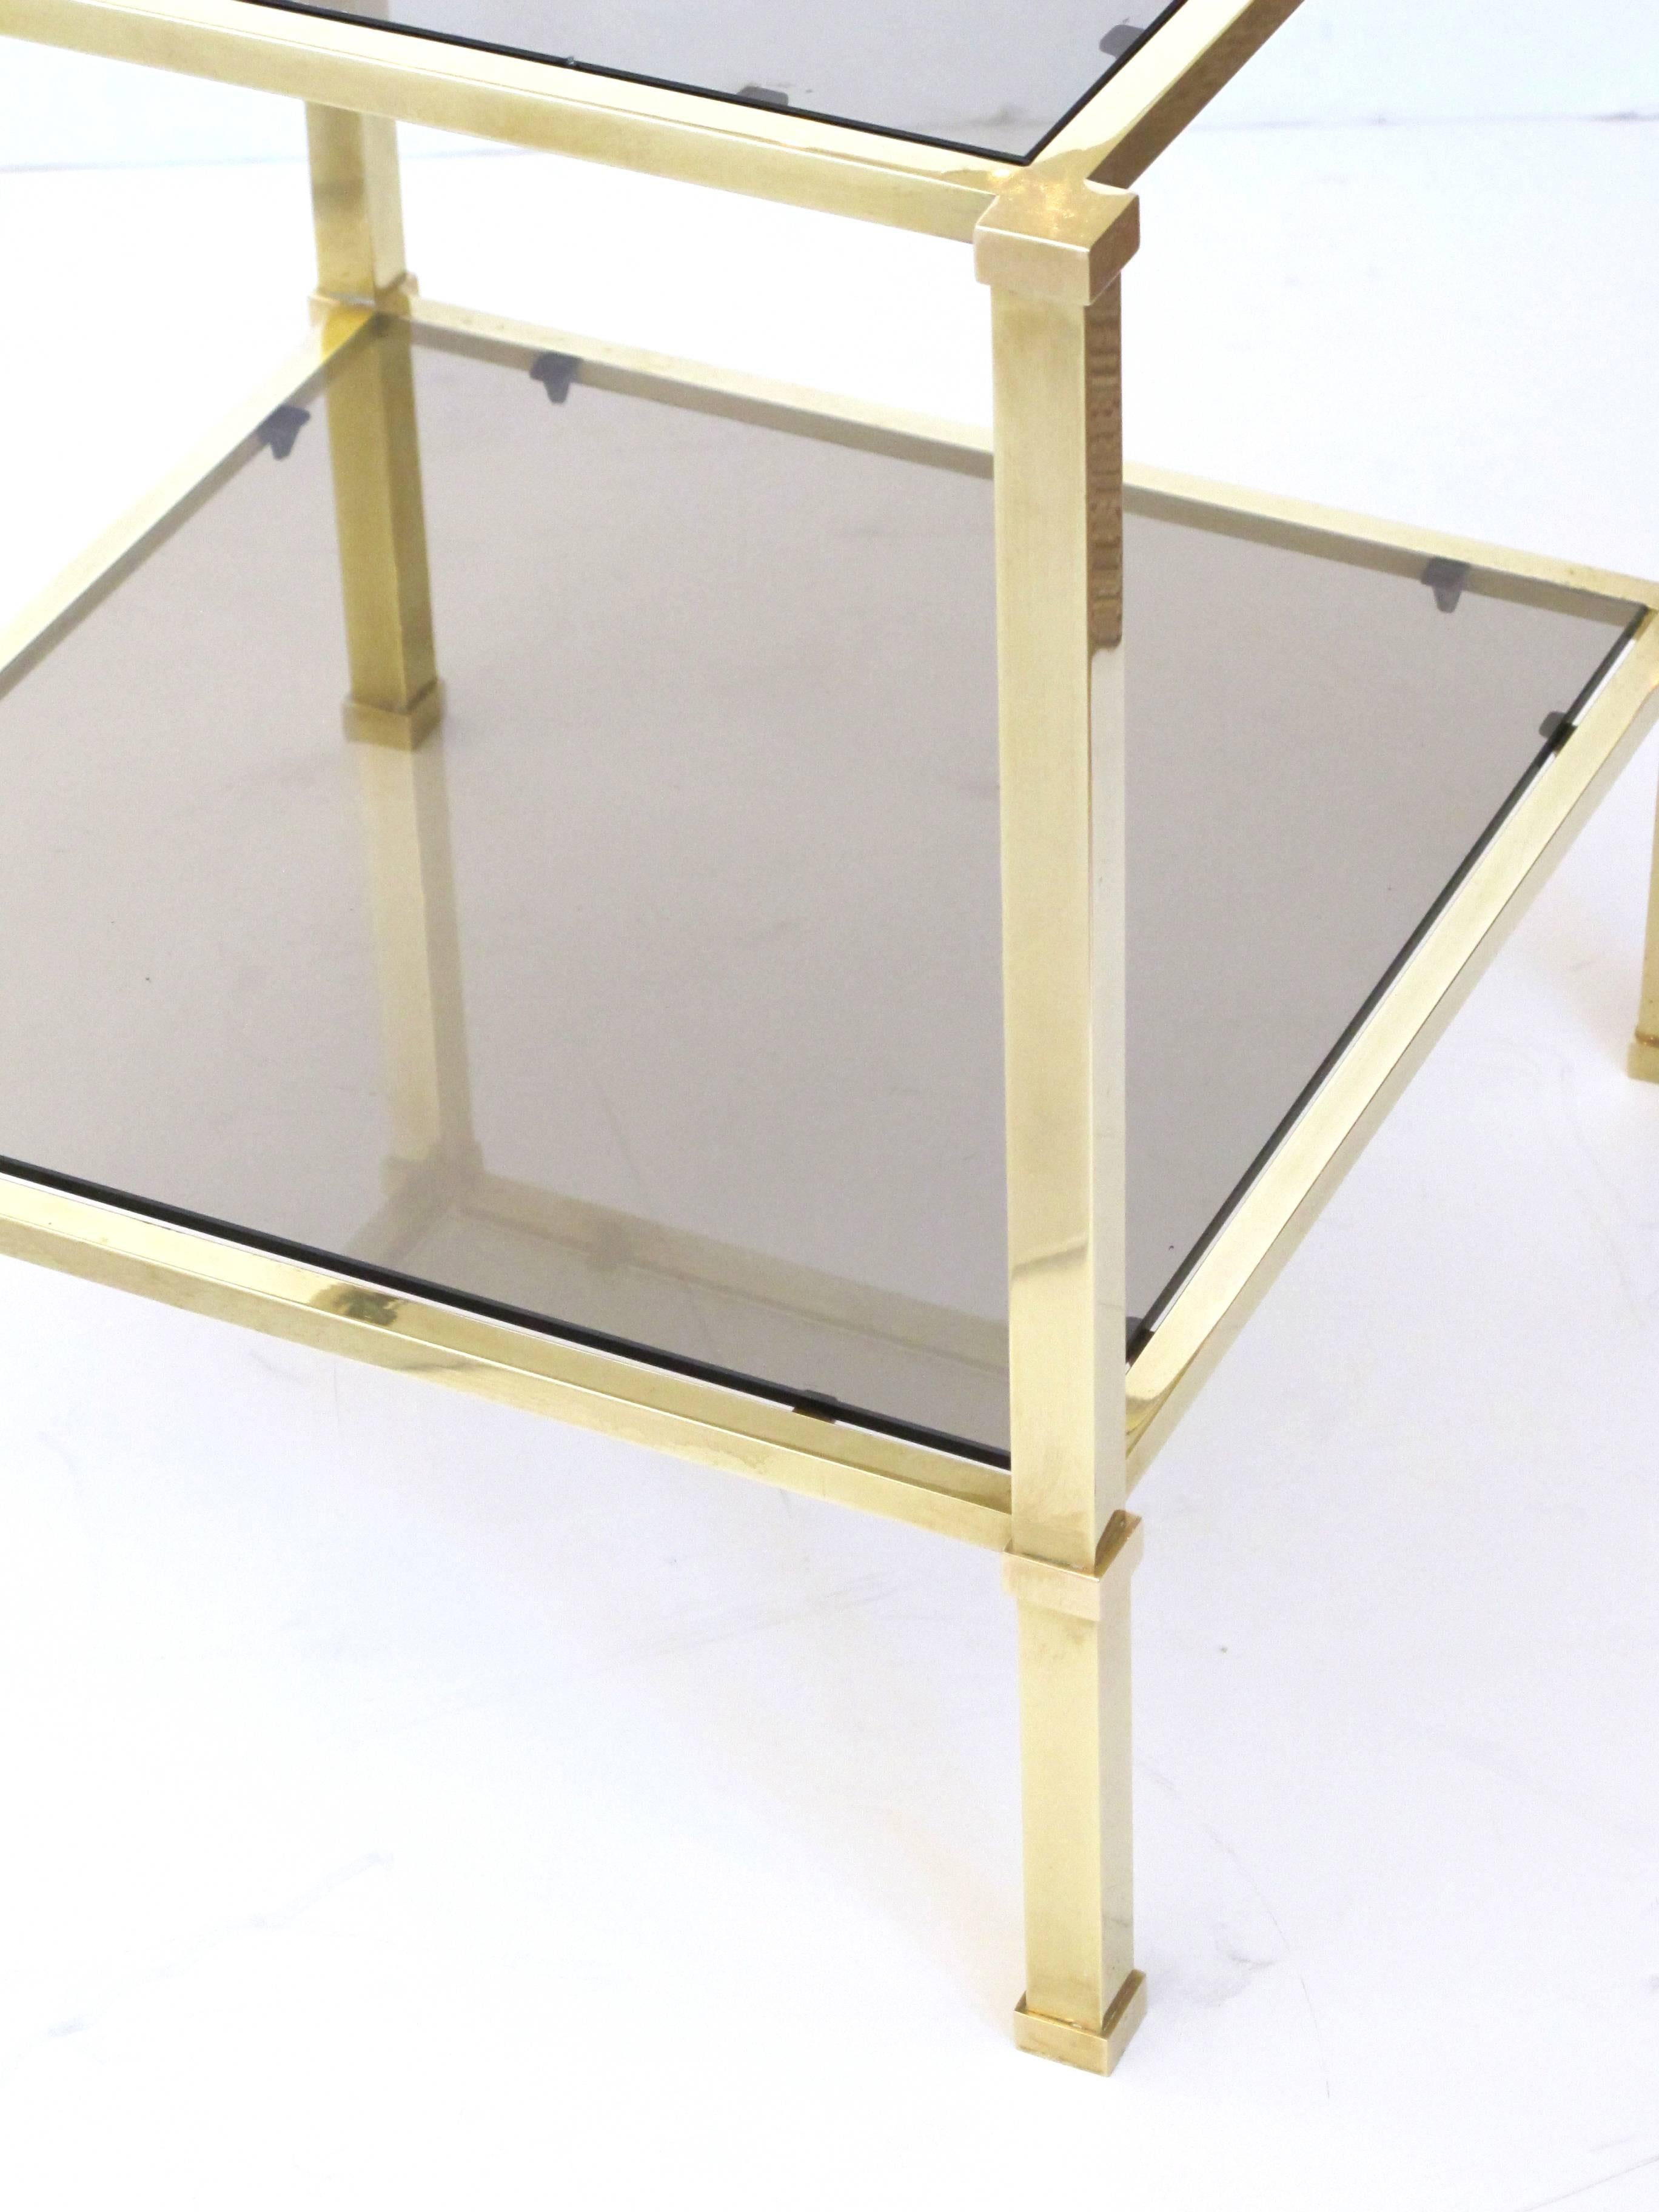 Paire de tables d'appoint carrées de bonne qualité datant des années 1970, en laiton massif et verre fumé ; chaque plateau en verre encastré dans un cadre en laiton massif reposant sur des supports quadrangulaires reliés par une étagère inférieure